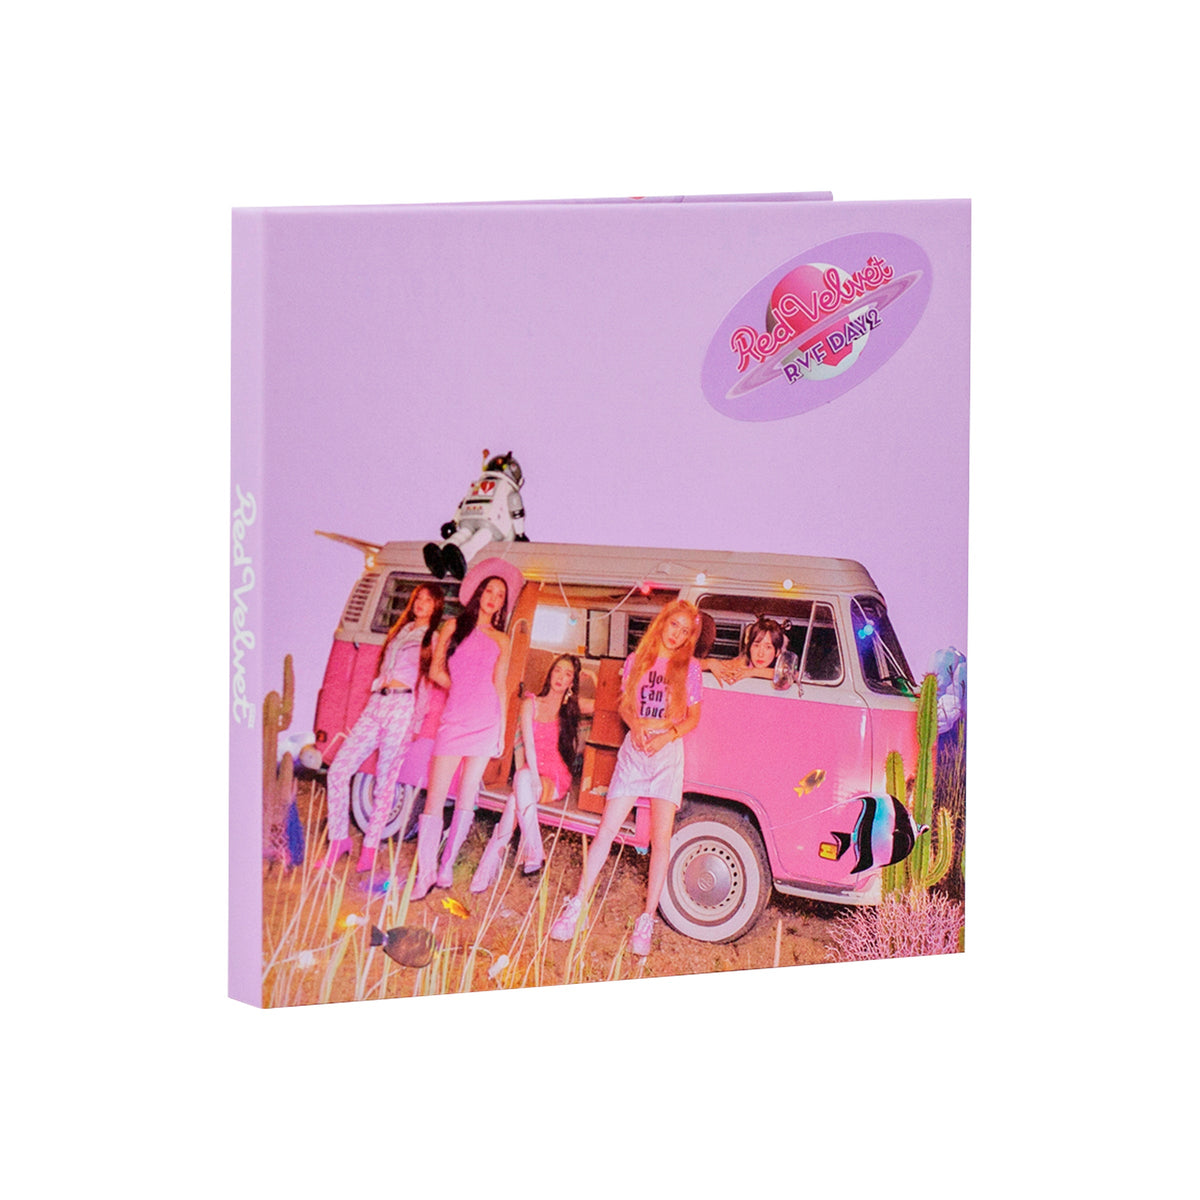 Red Velvet The ReVe Festival Day 2 Mini Album Main Product Image